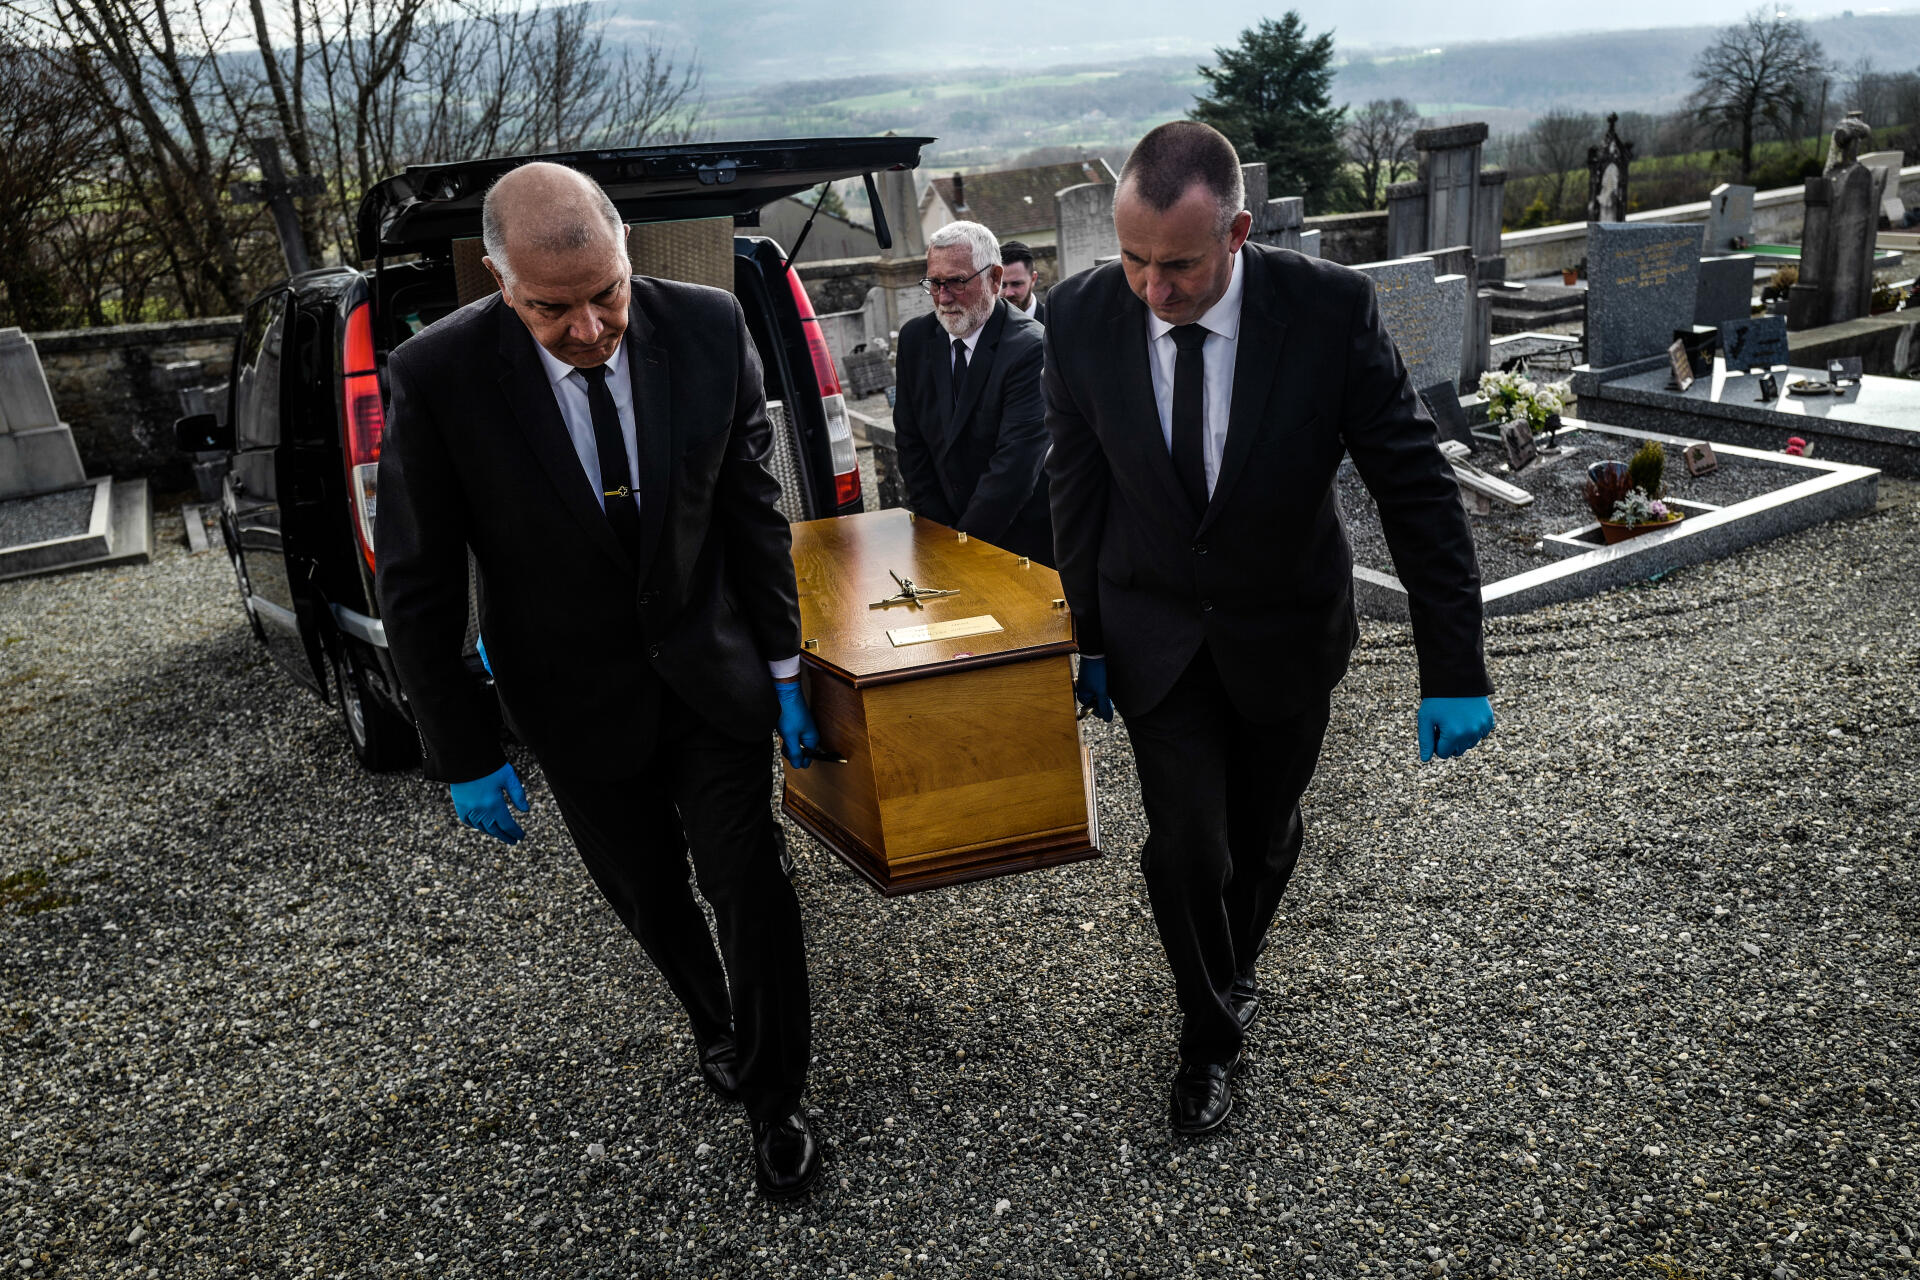 Les mains gantées de caoutchouc, les employés des pompes funèbres saisissent le cercueil par les poignées pour ne pas avoir de contact avec le bois.